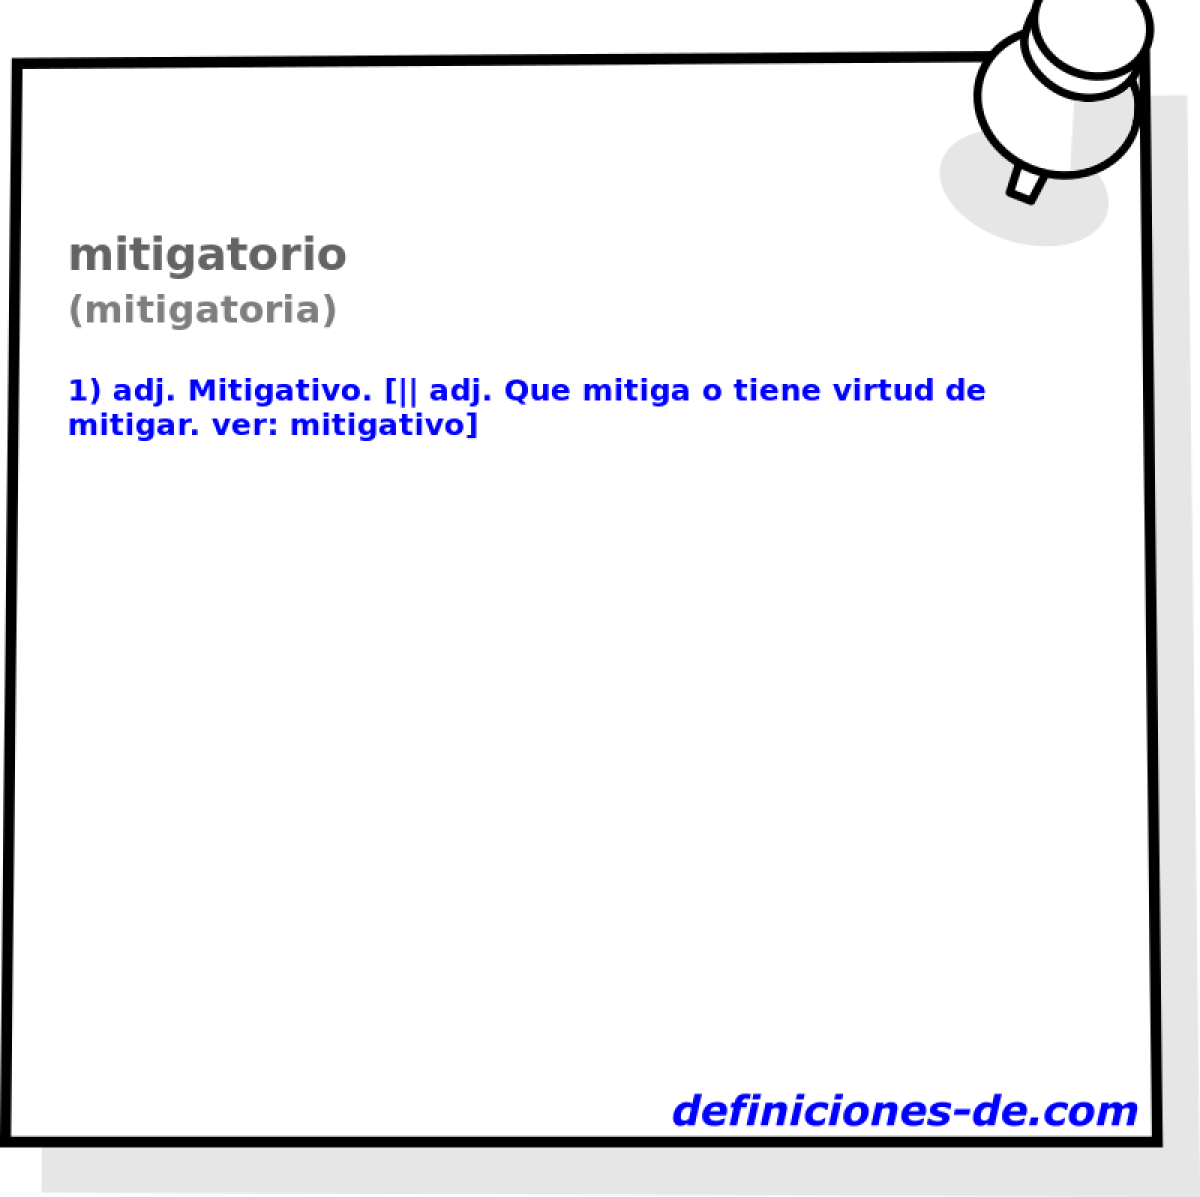 mitigatorio (mitigatoria)